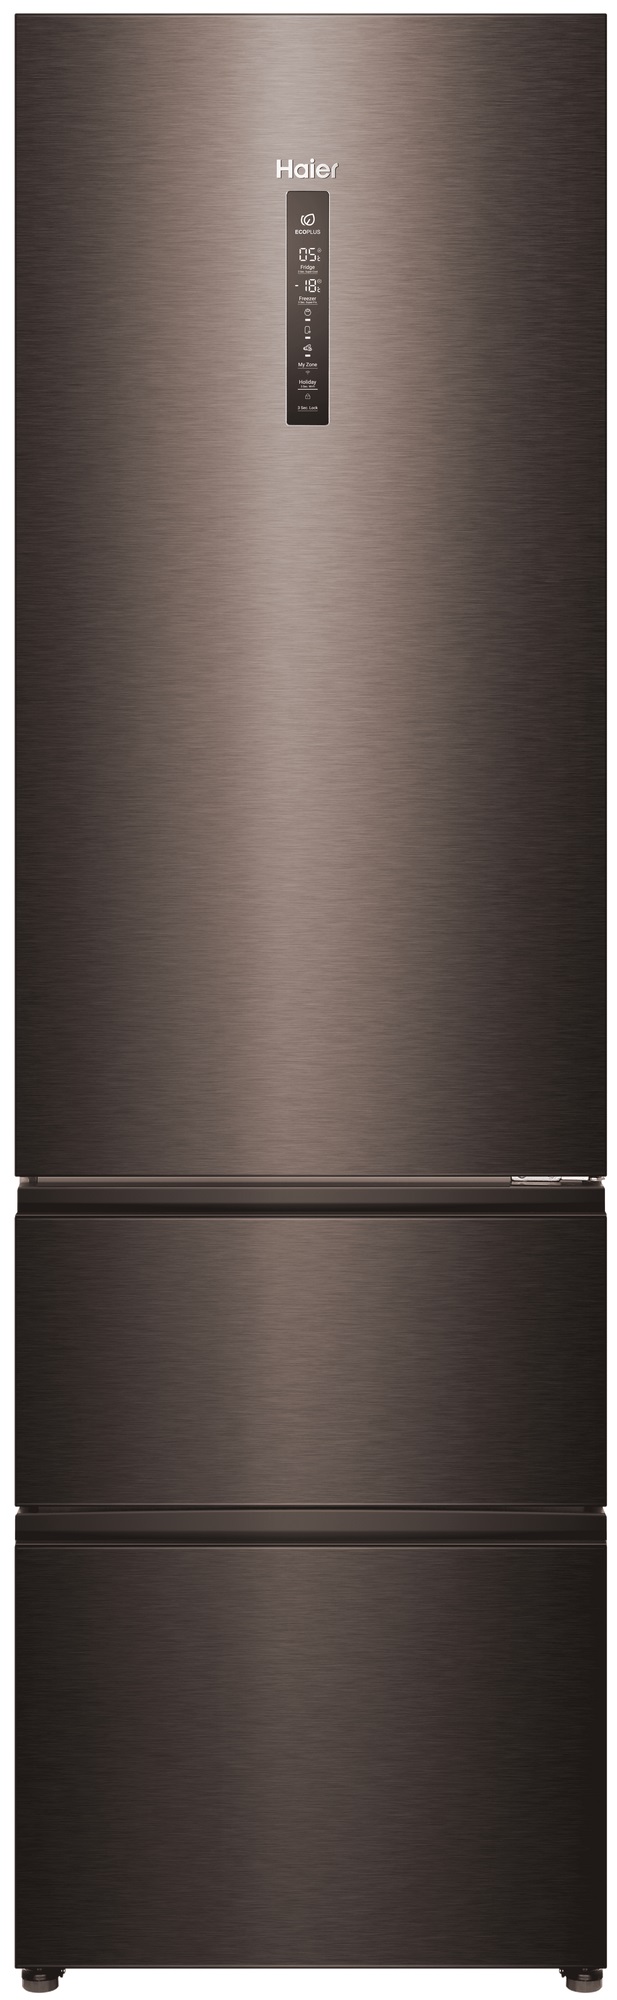 Холодильник Haier A4F739CDBGU1 серый холодильник haier c2f636cxmv серый